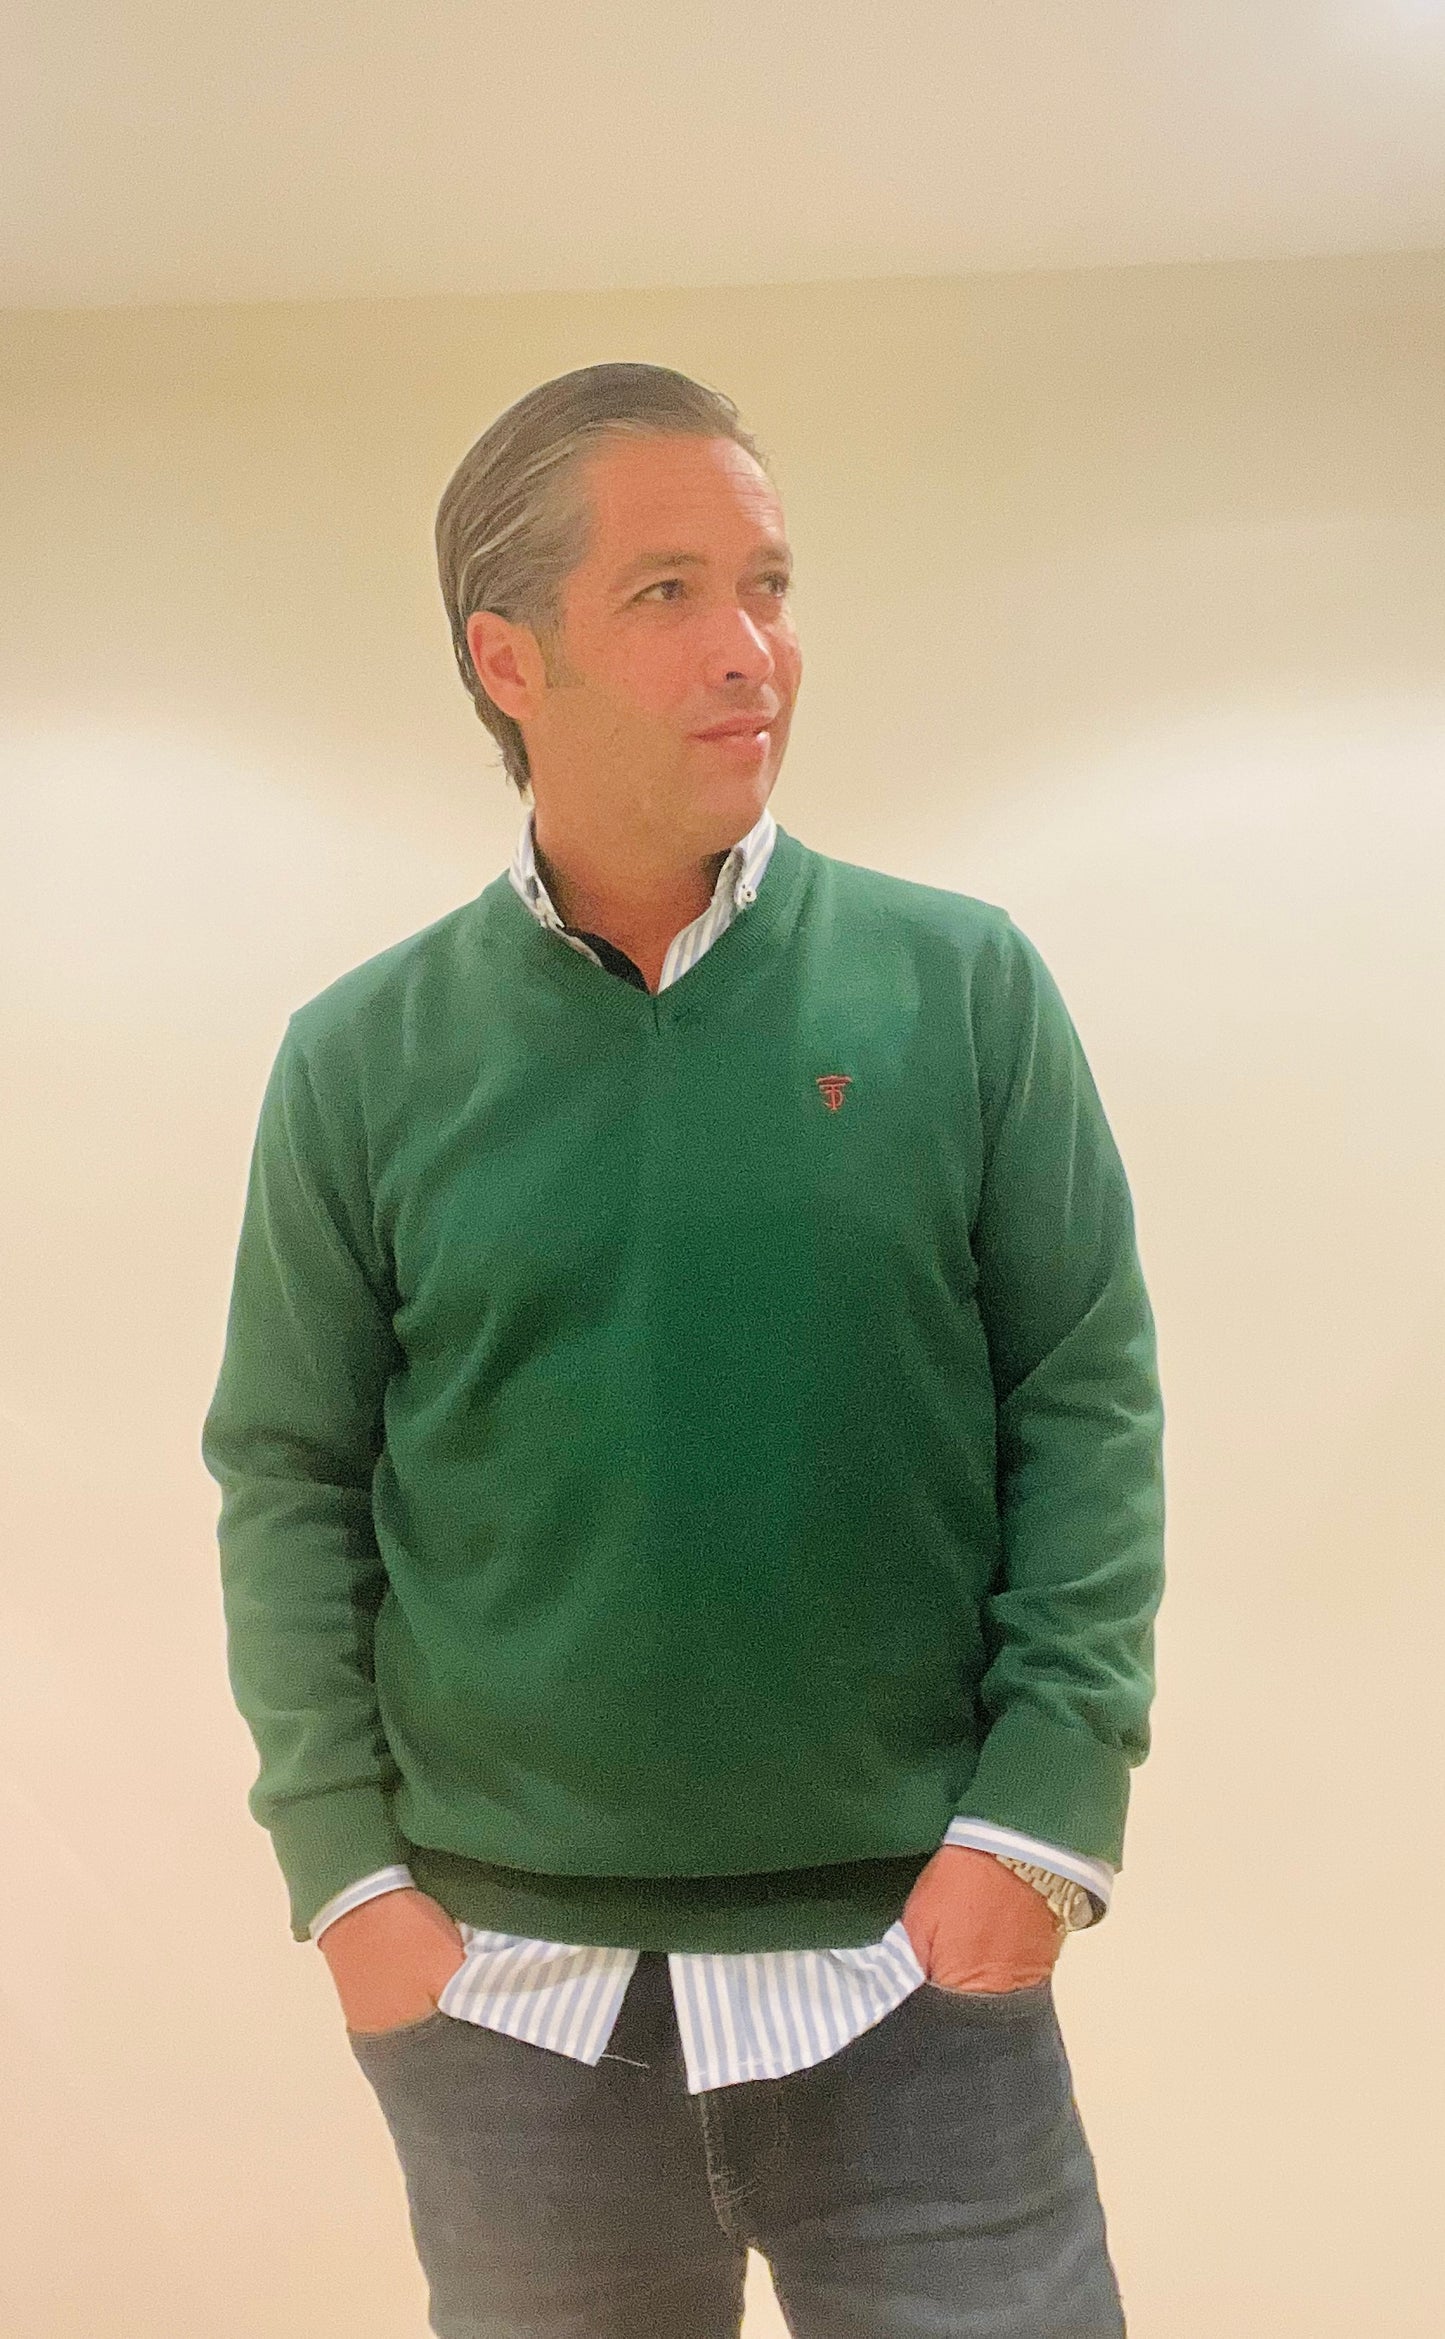 Green sweater